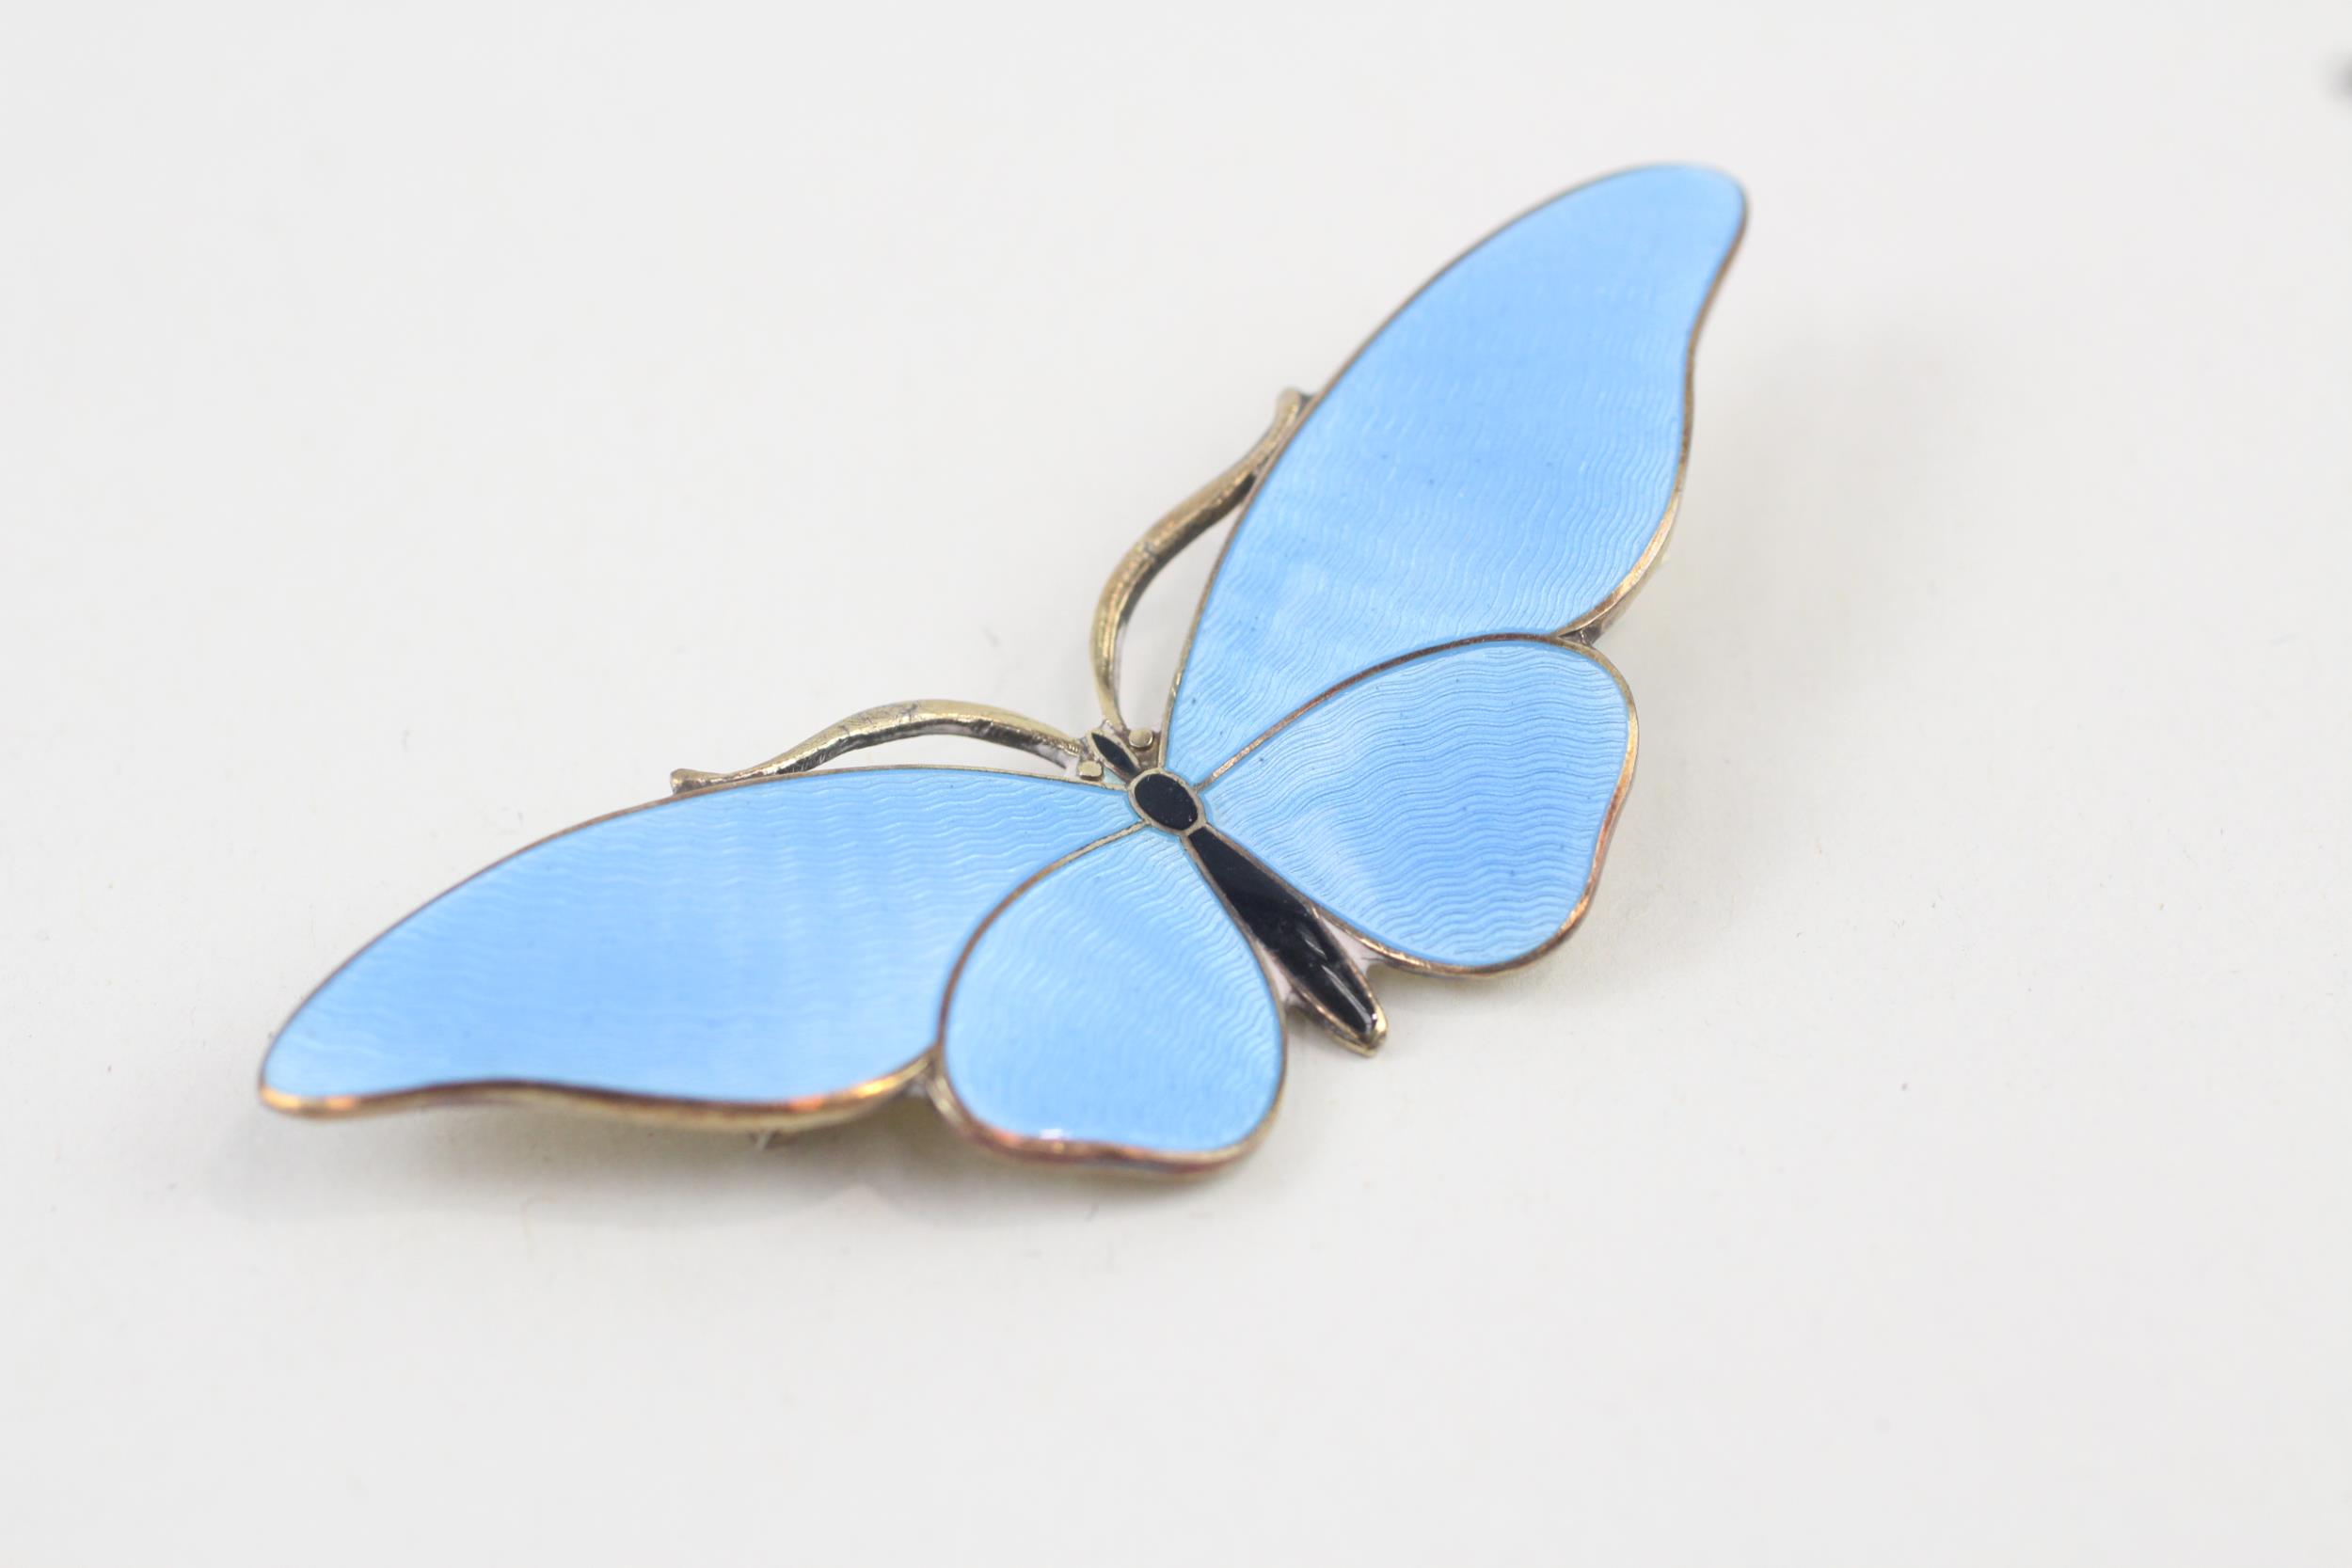 Silver enamel butterfly brooch by Gustav Hellstrom (13g) - Image 7 of 13